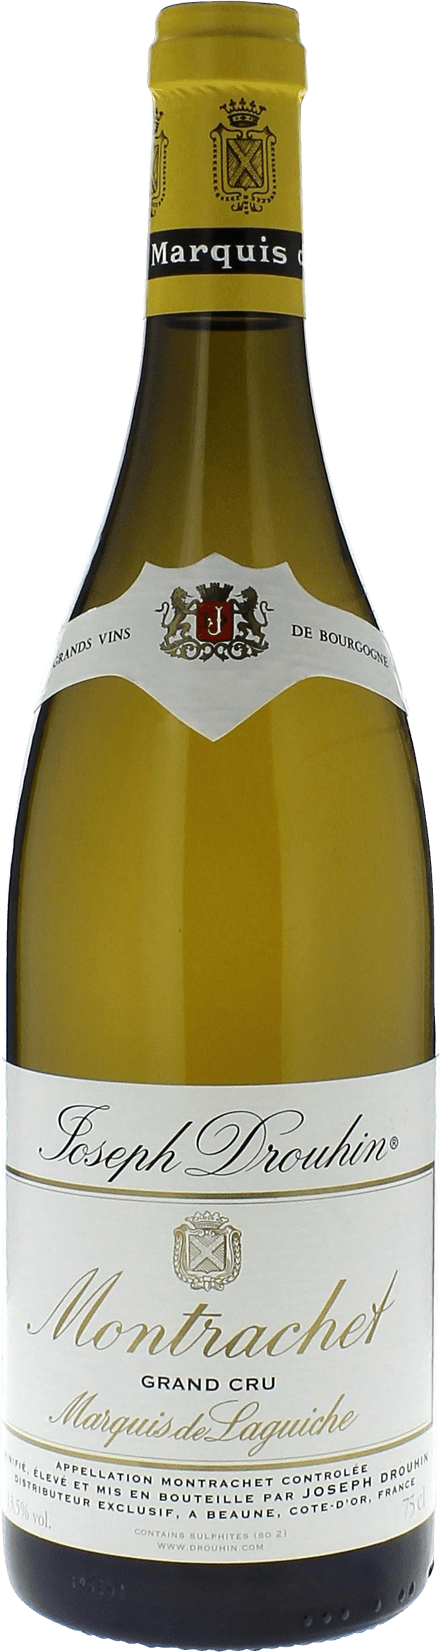 Chassagne montrachet morgeot marquis de la guiche 2015 Domaine Joseph DROUHIN, Bourgogne blanc